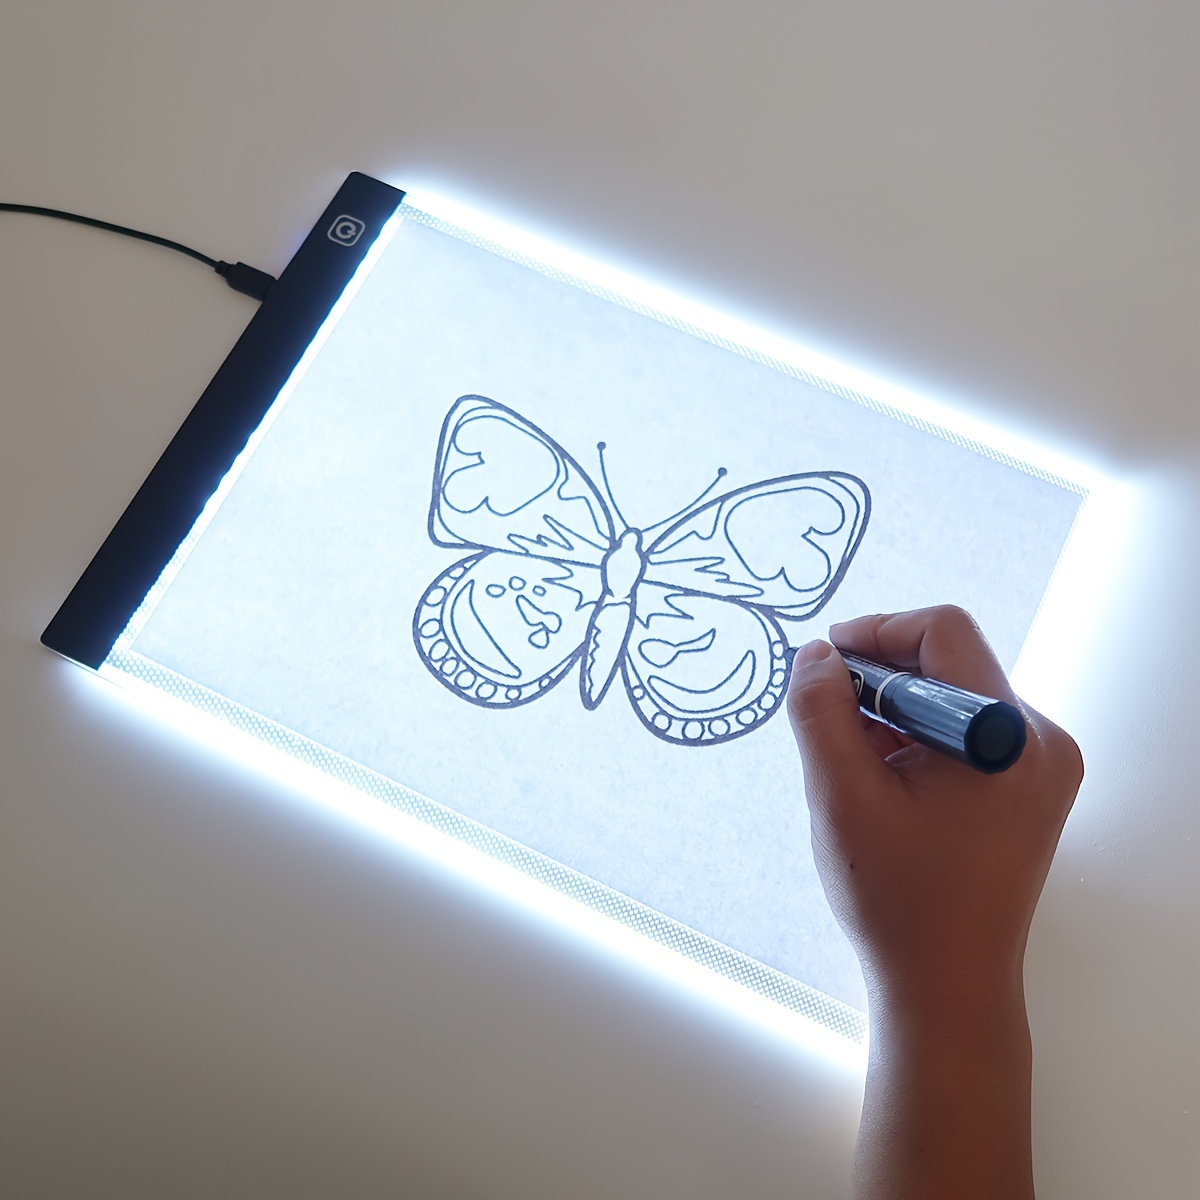 Portable A5 LED Boîte à lumière Dessin Traçage Traceur Tableau de copie  Table Pad Panneau Copyboard Outil de peinture au diamant avec contrôle de  la luminosité en continu Câble USB pour artiste